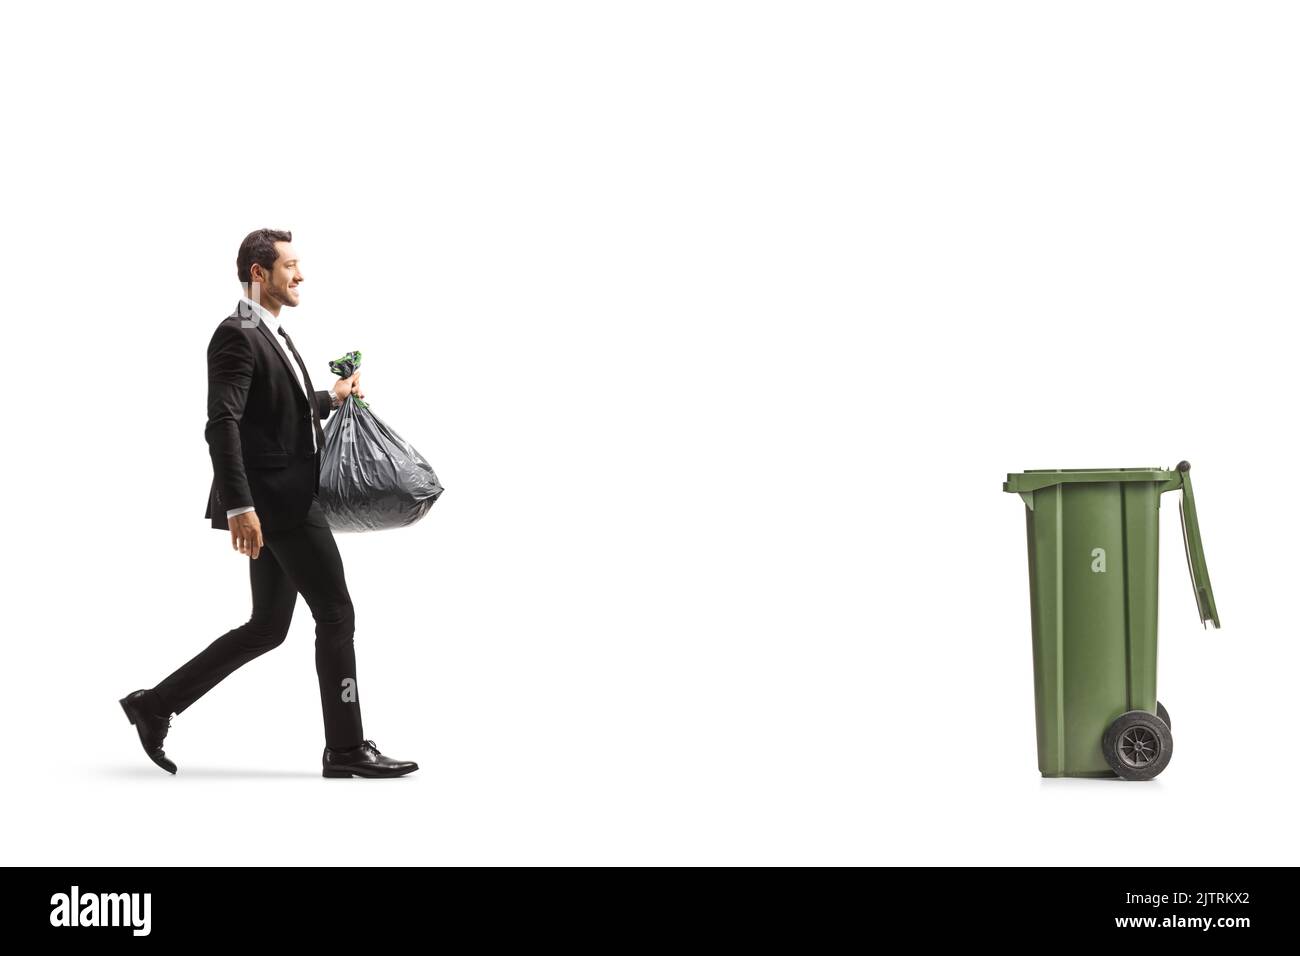 Ganzkörperaufnahme eines Geschäftsmannes, der auf einen Behälter zugeht und einen Plastikmüll mit isoliertem Hintergrund trägt Stockfoto